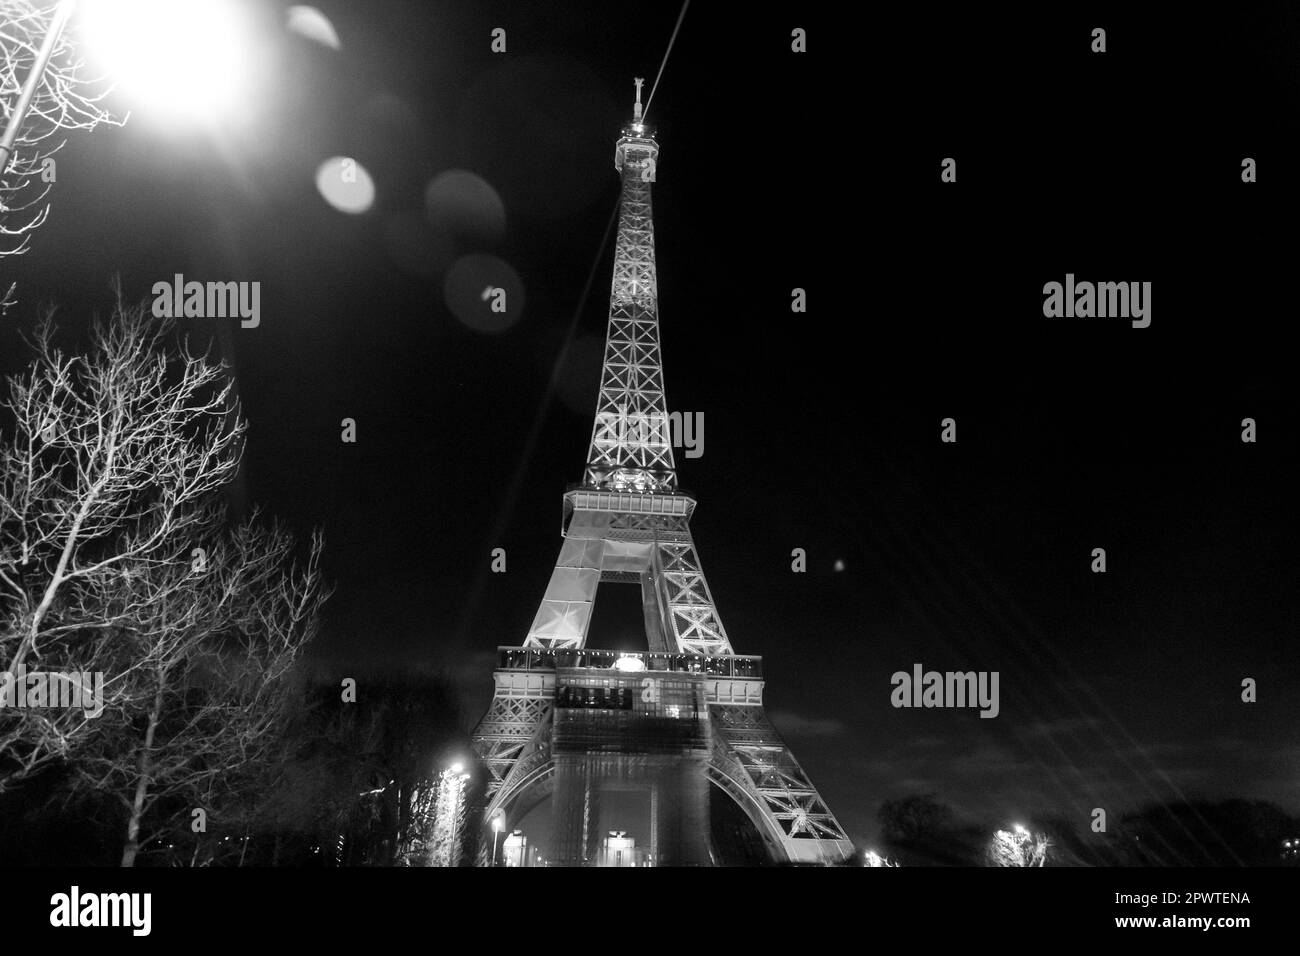 Der berühmte Eiffelturm, der nachts beleuchtet wird, der schmiedeeiserne Gitterturm auf dem Champ de Mars in Paris, Frankreich. Stockfoto